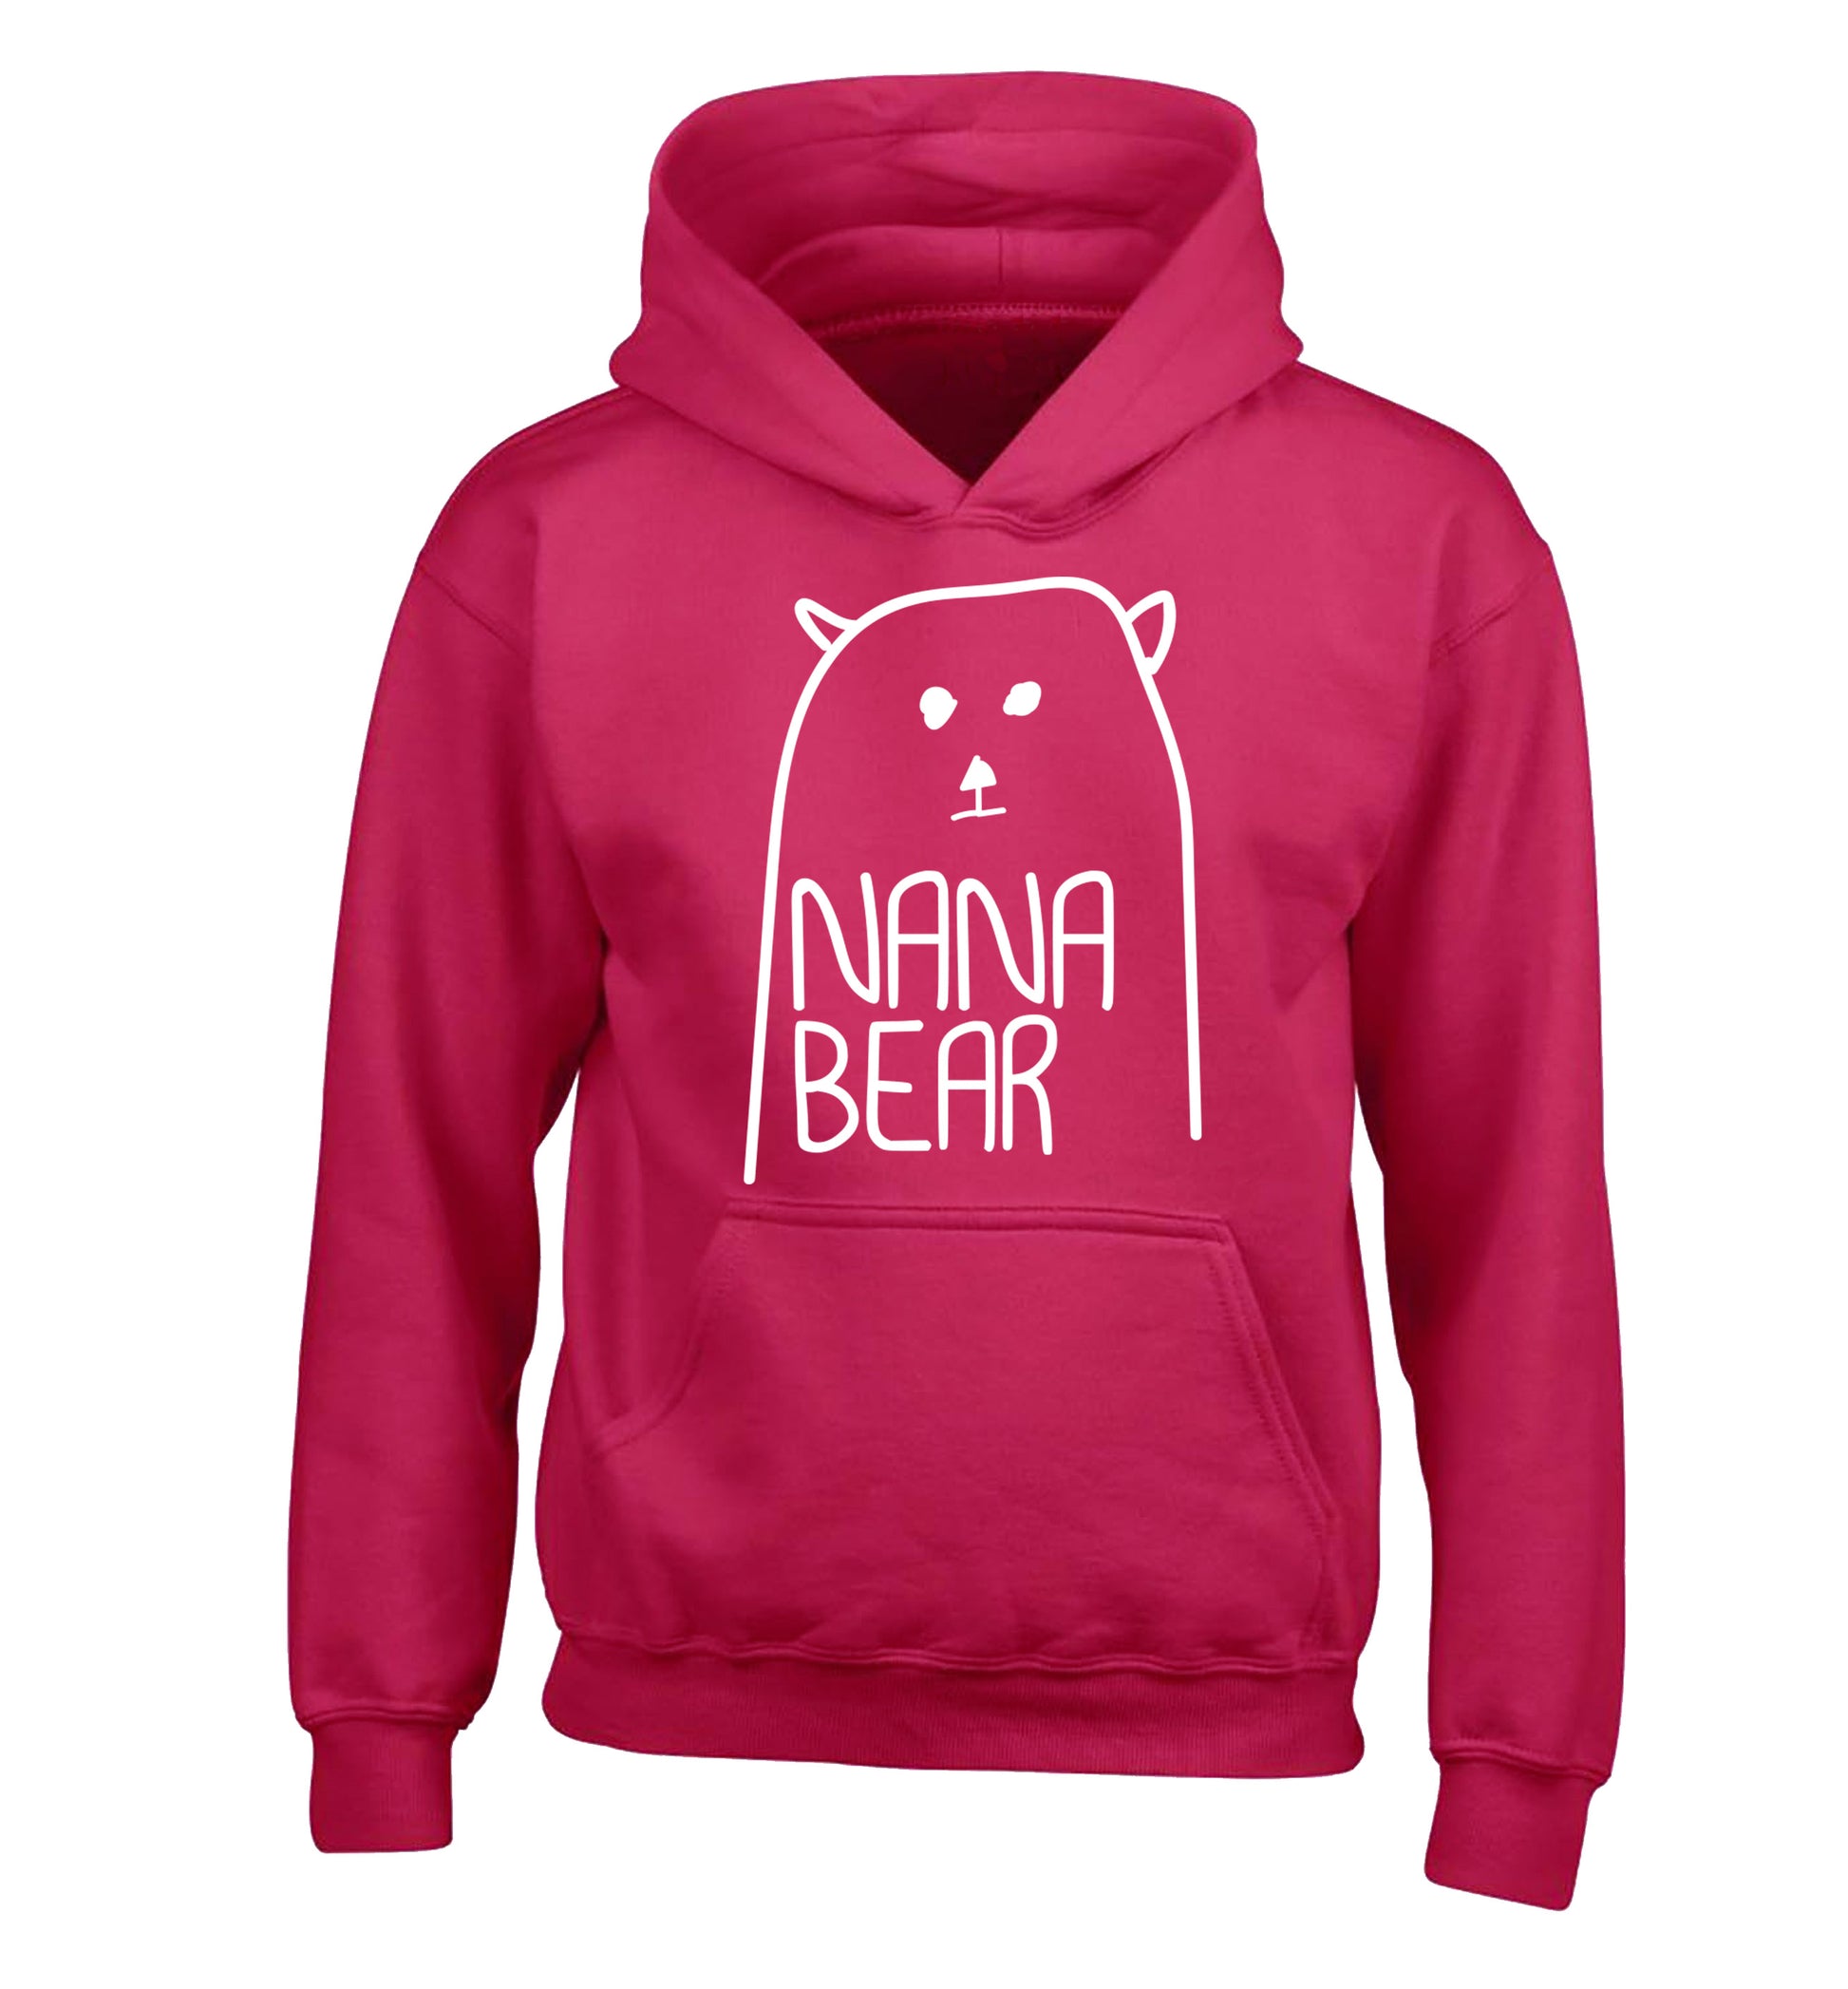 Nana bear children's pink hoodie 12-13 Years